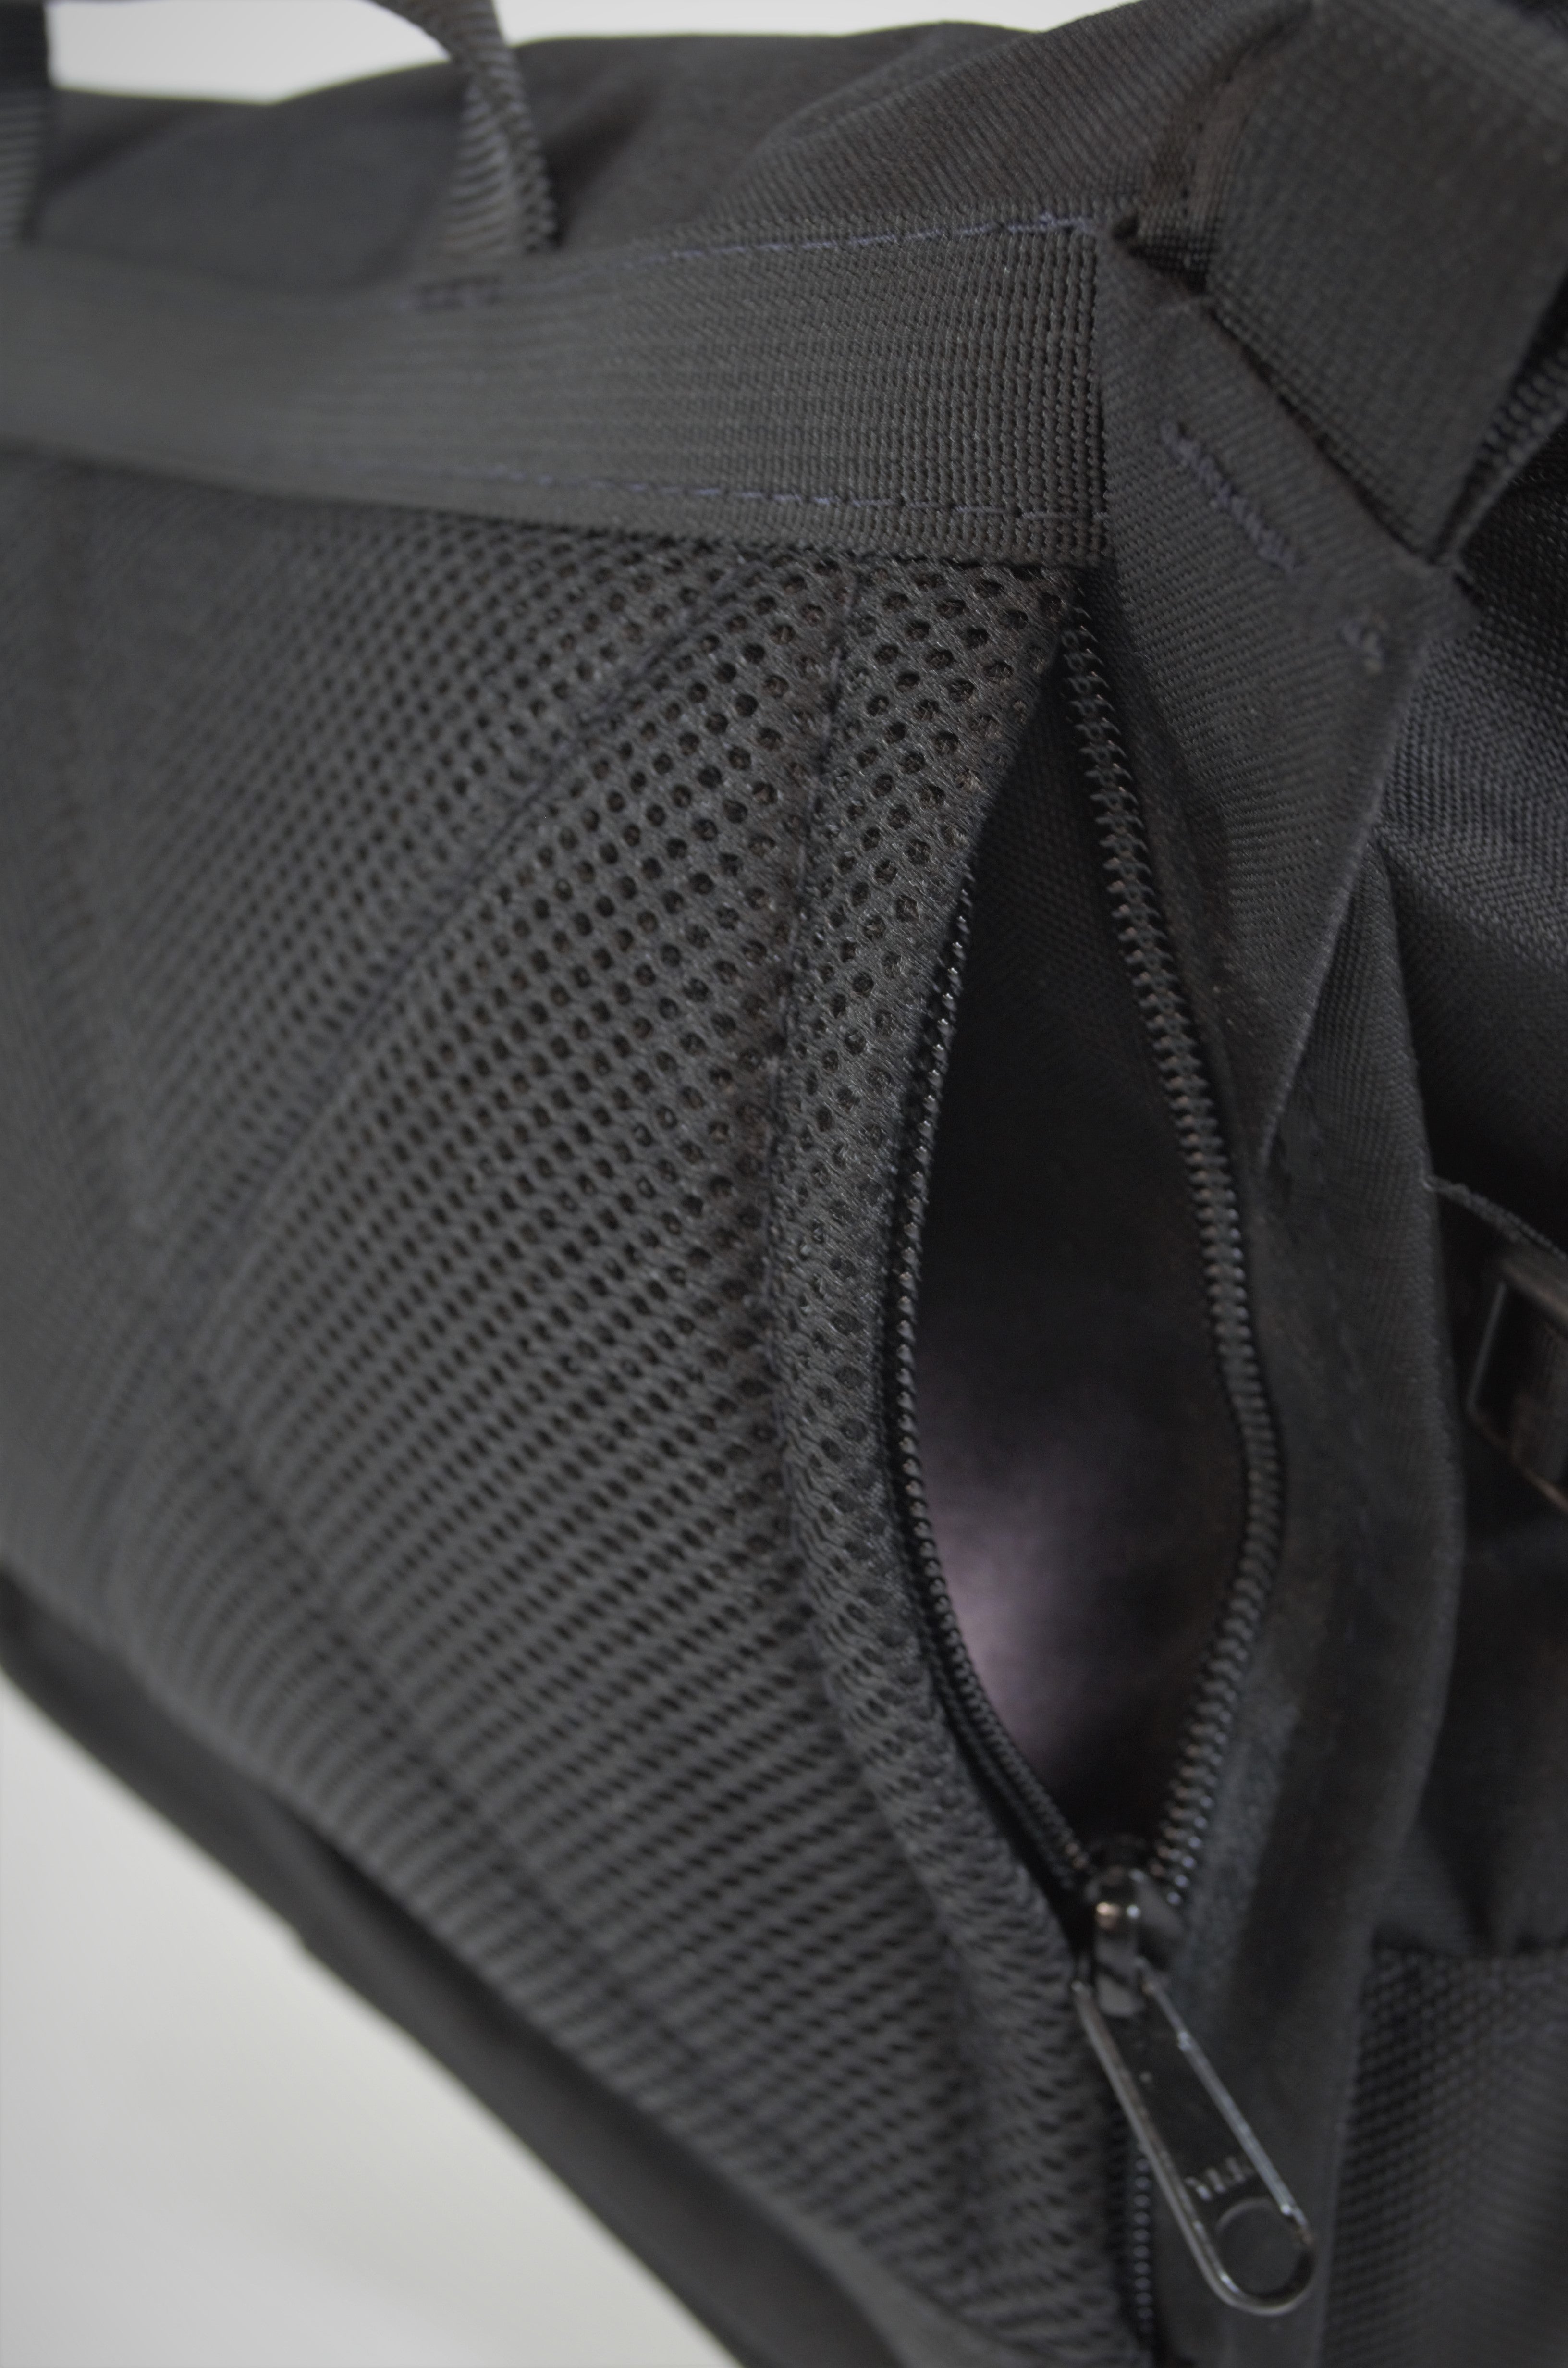 Flux Shoulder Bag - Black